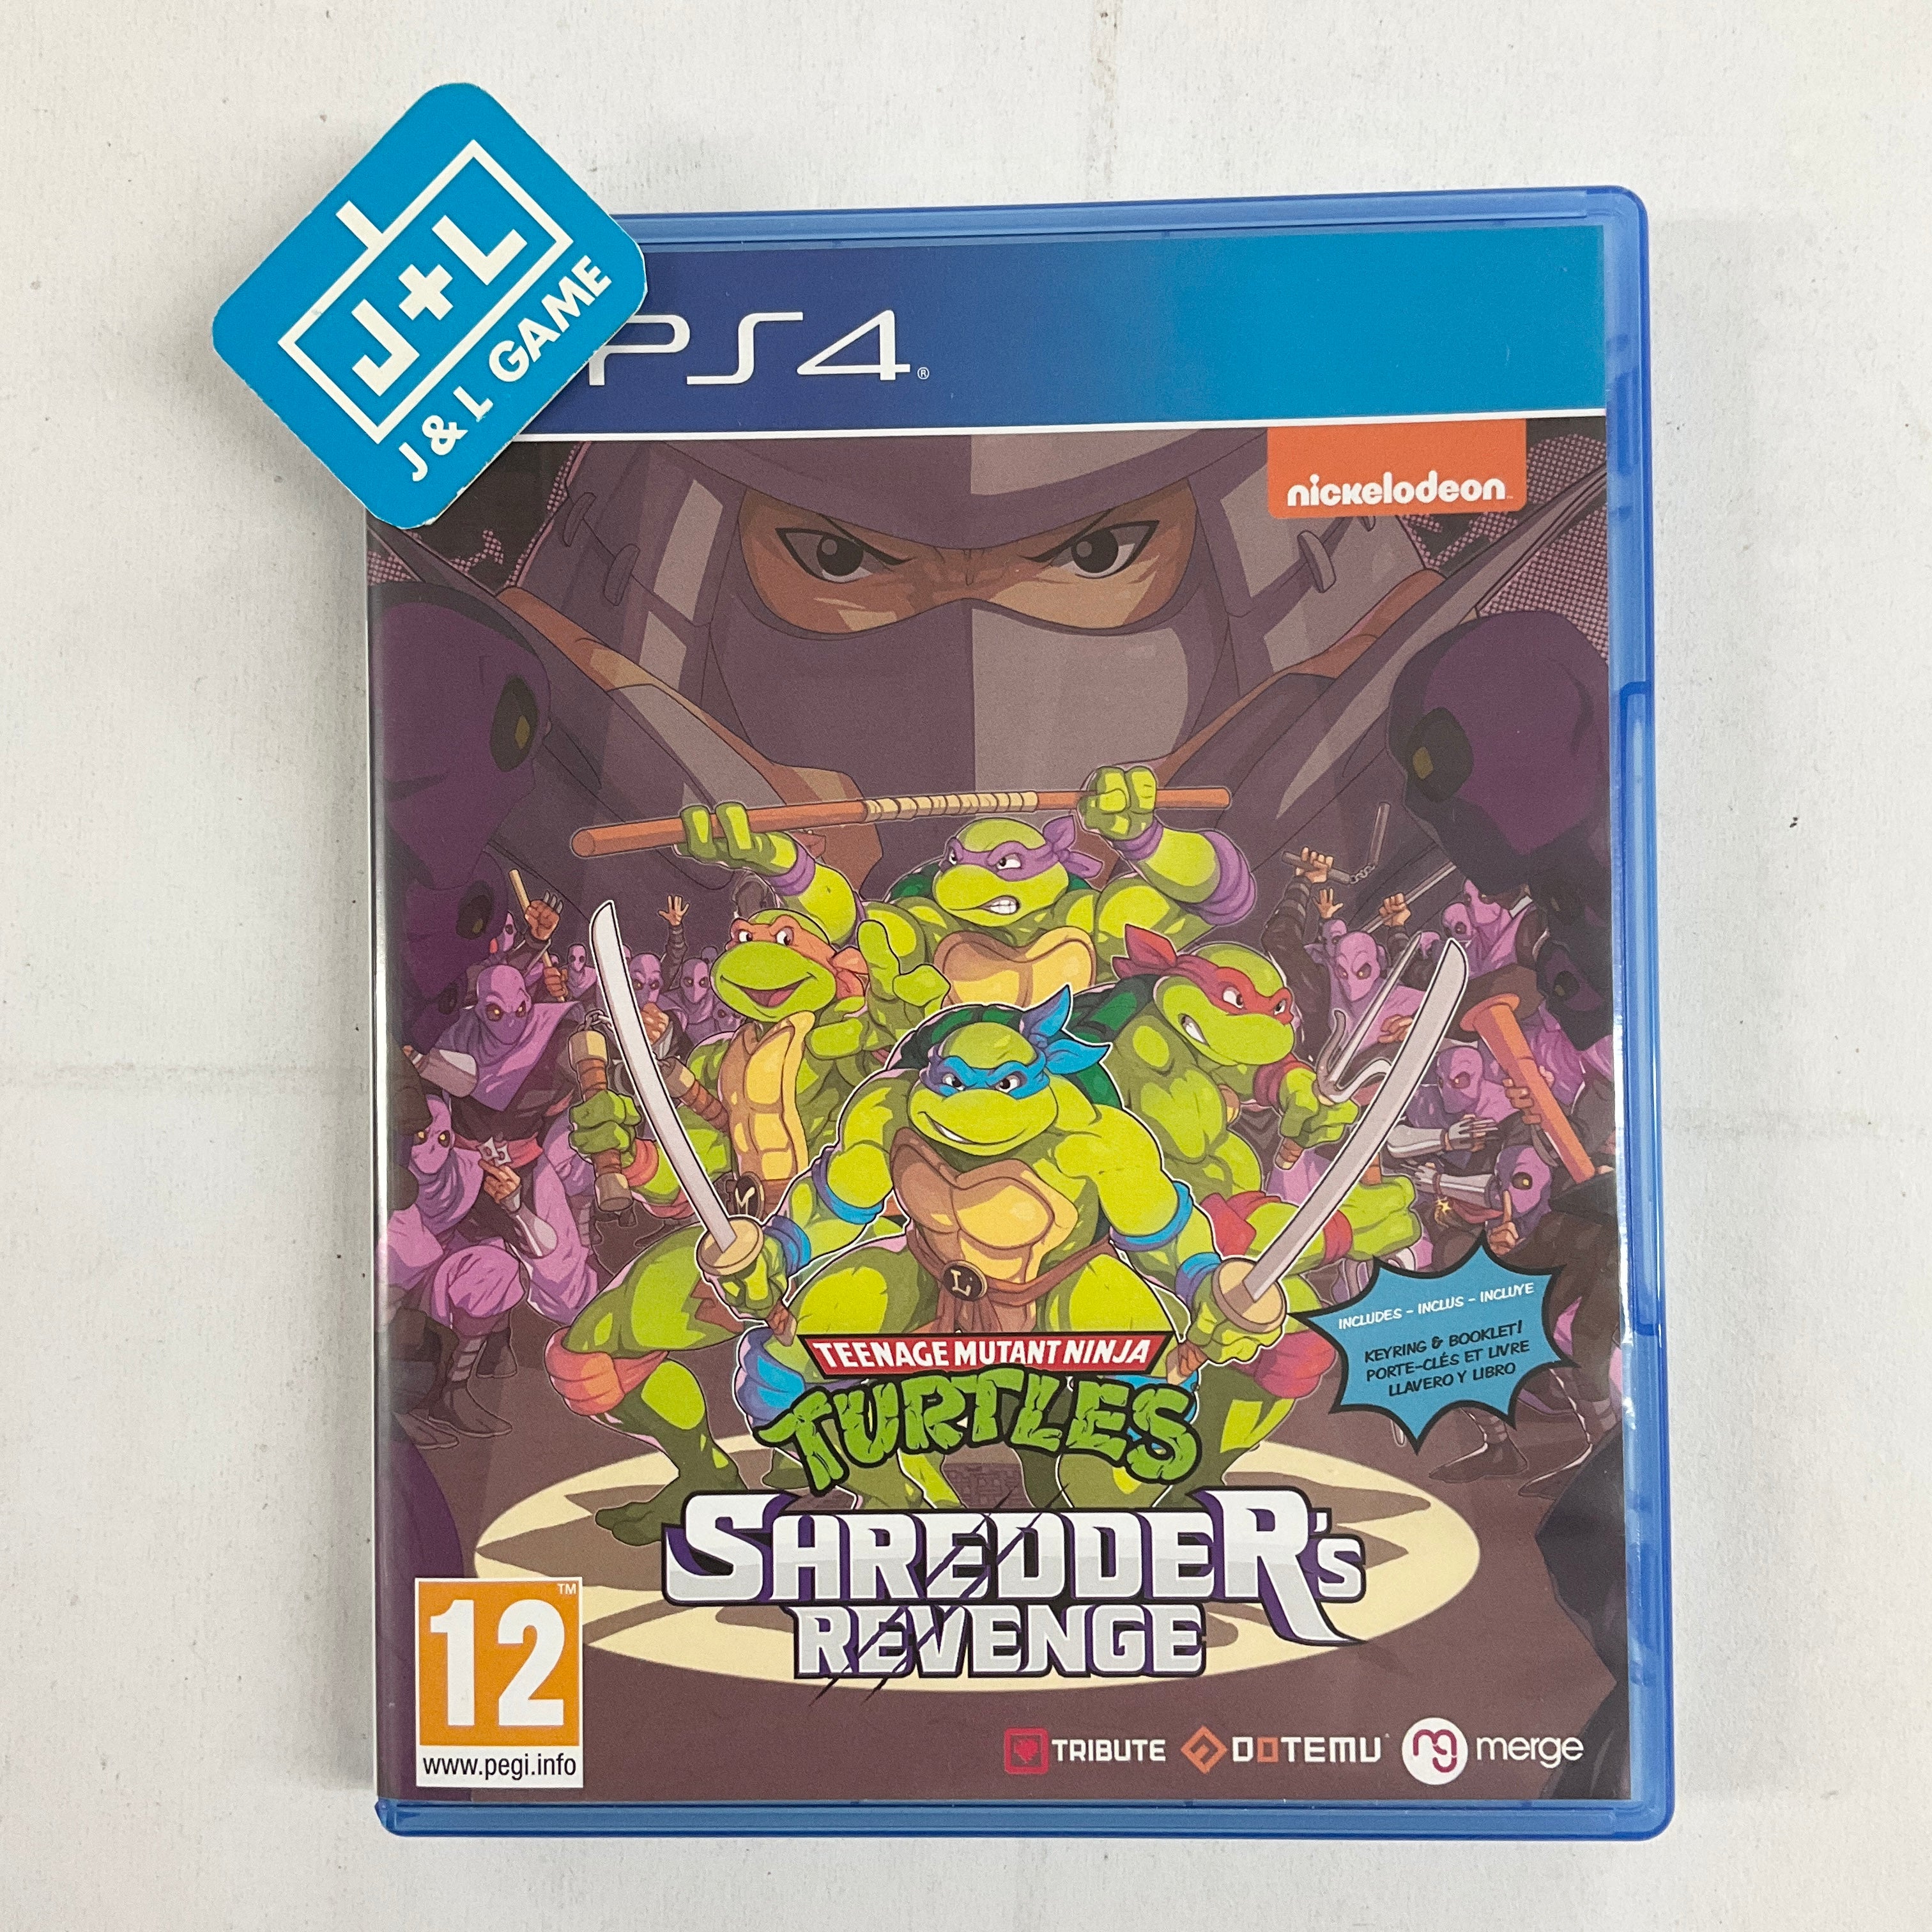 Teenage Mutant Ninja Turtles: Shredder's Revenge - (PS4) PlayStation 4 [Pre-Owned] (European Import) Video Games Merge Games   